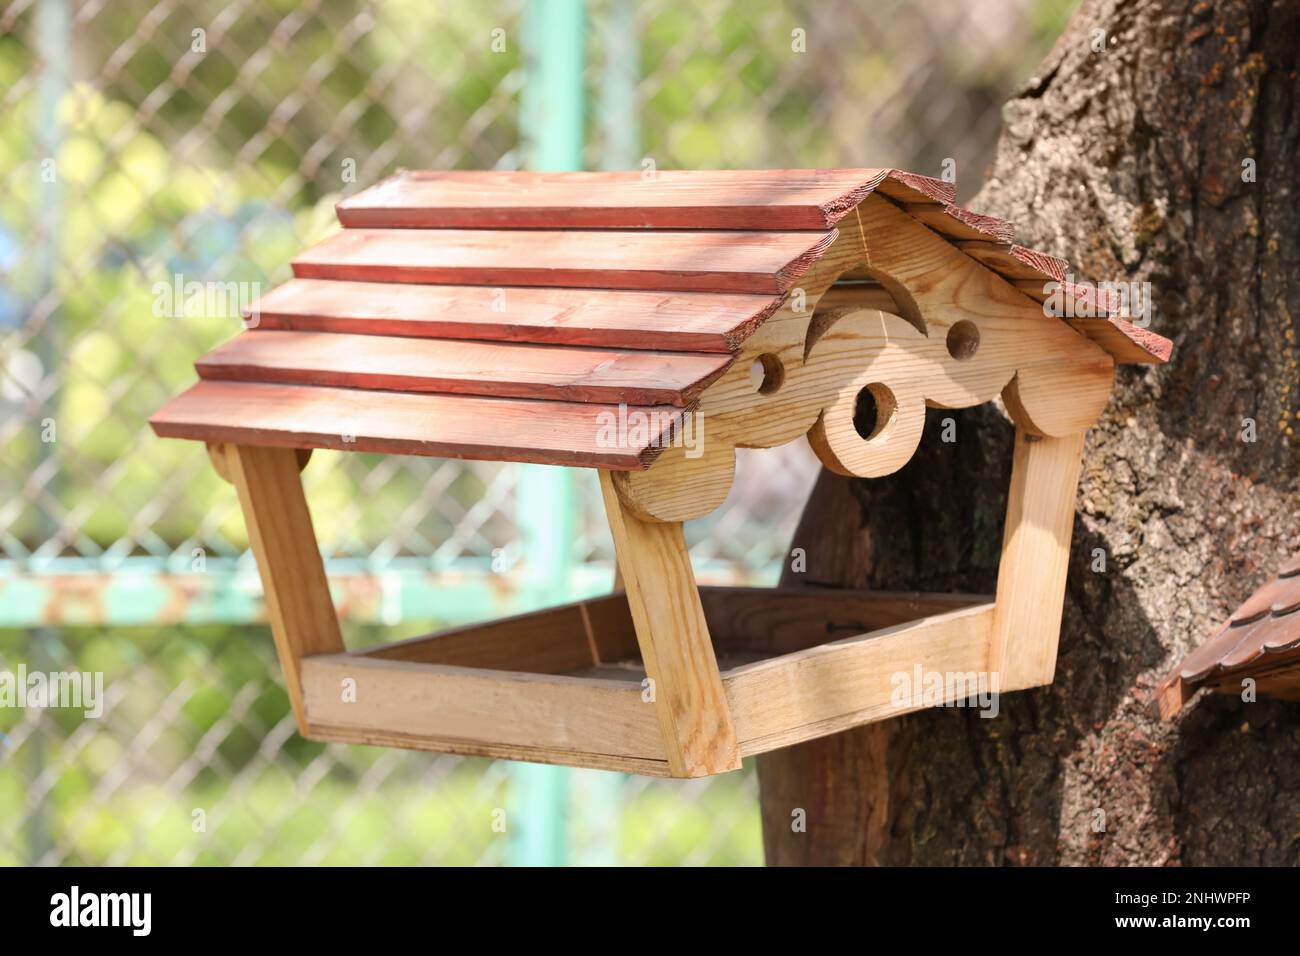 Süßes Vogelhaus aus Holz auf einem Baum im Freien Stockfotografie - Alamy